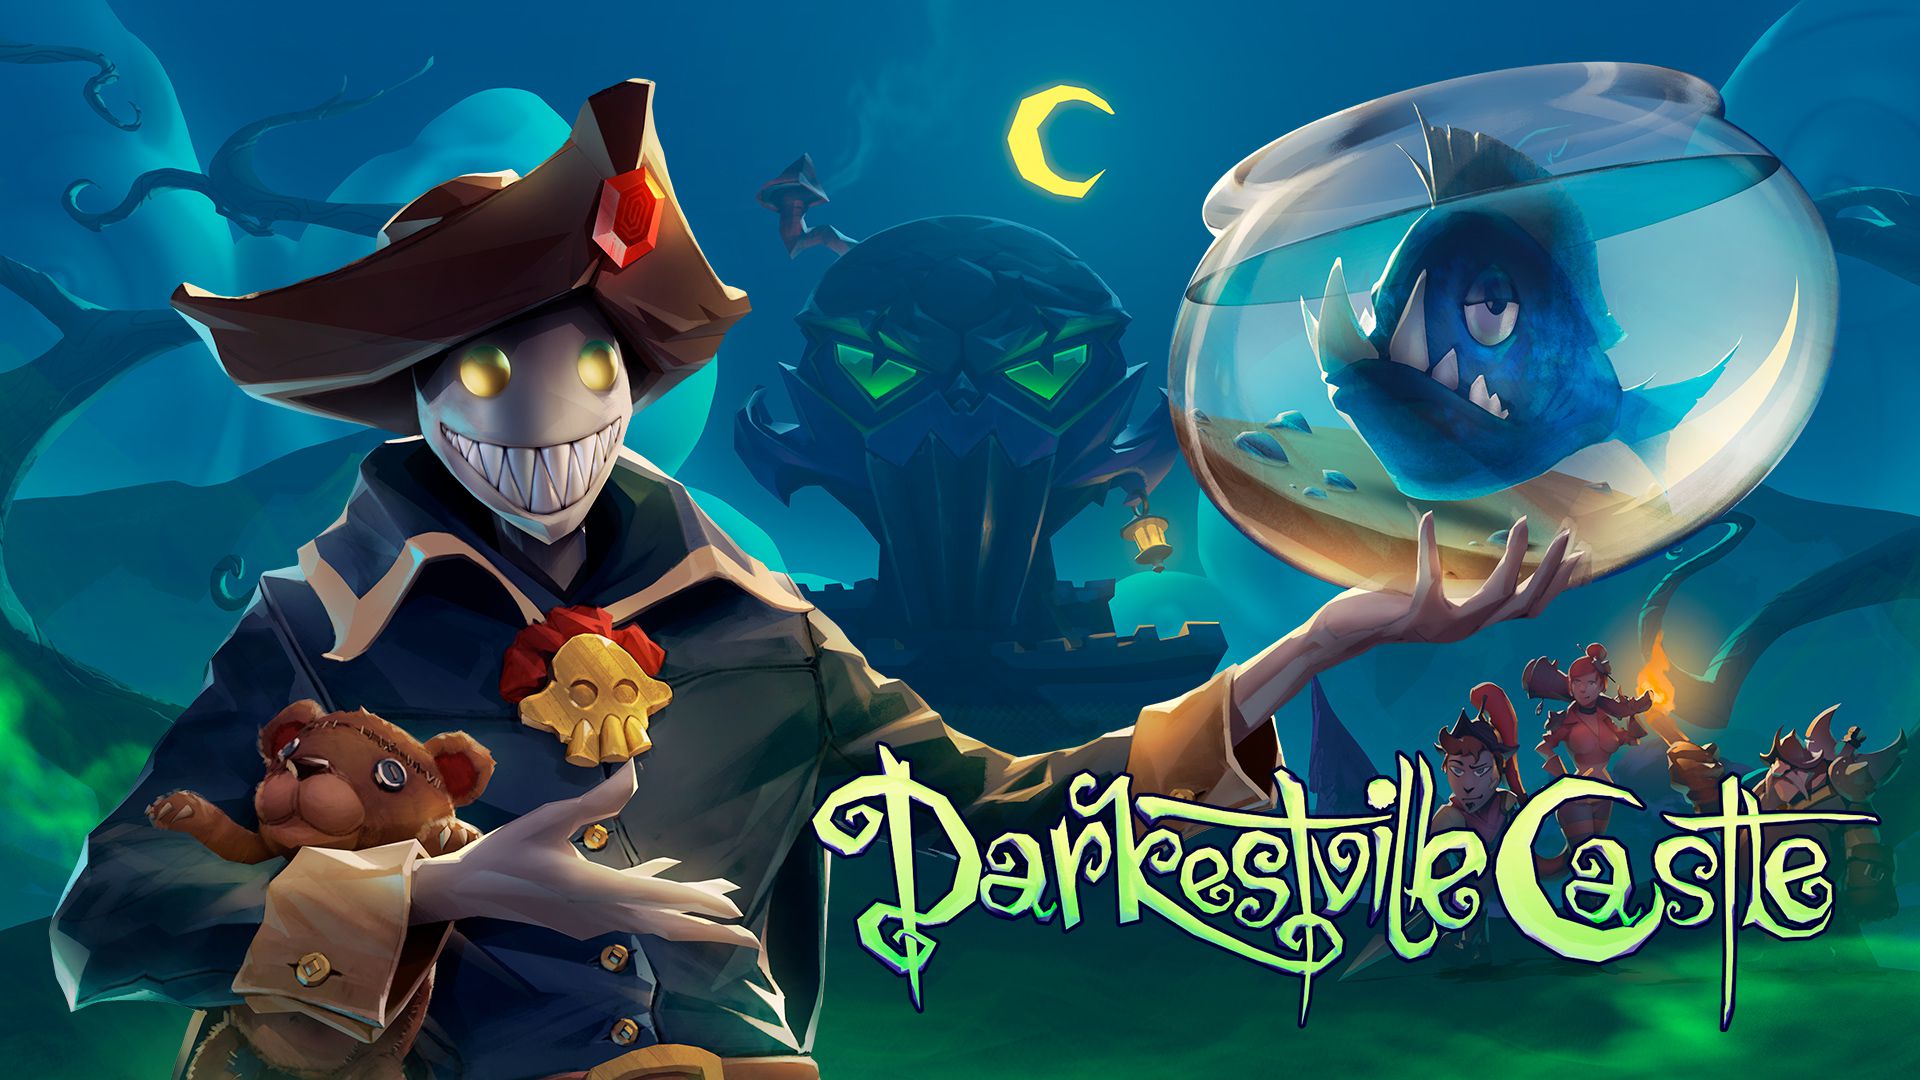 Darkestville Castle Principal